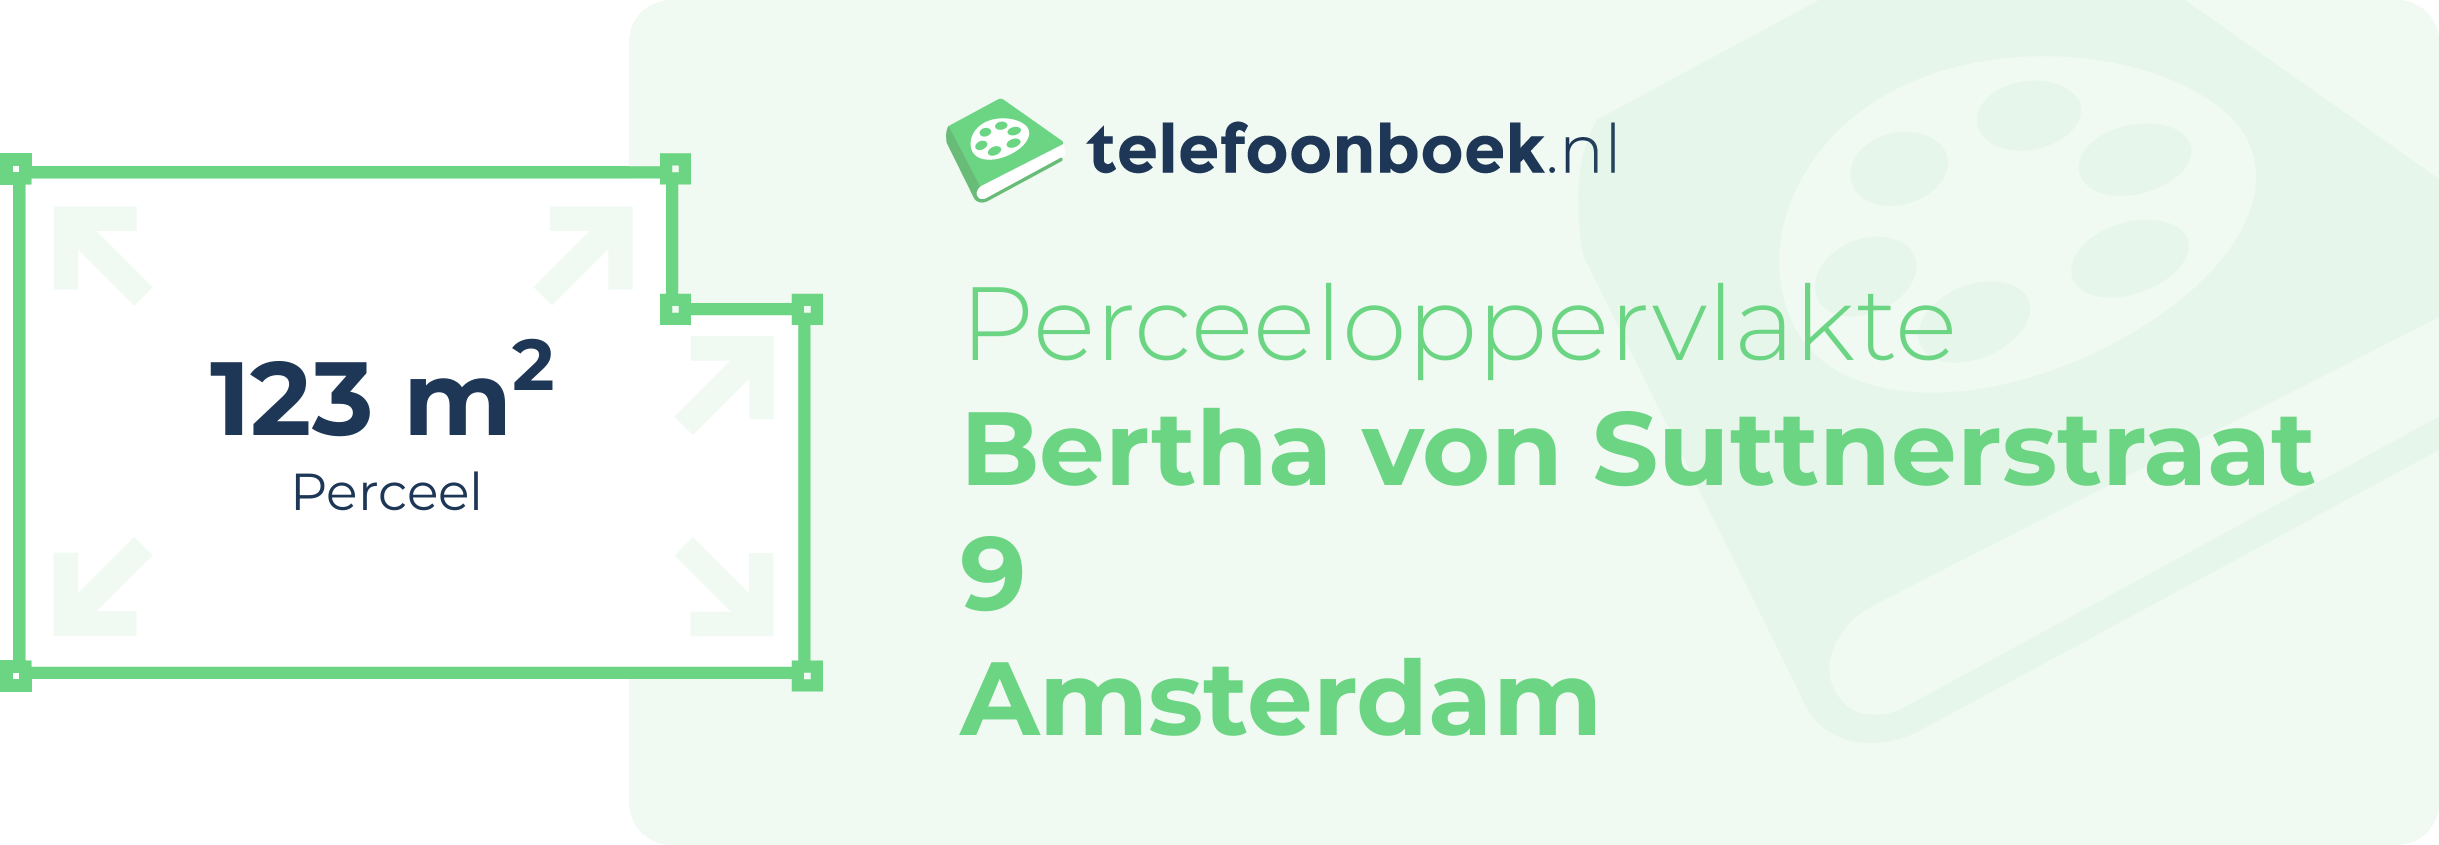 Perceeloppervlakte Bertha Von Suttnerstraat 9 Amsterdam